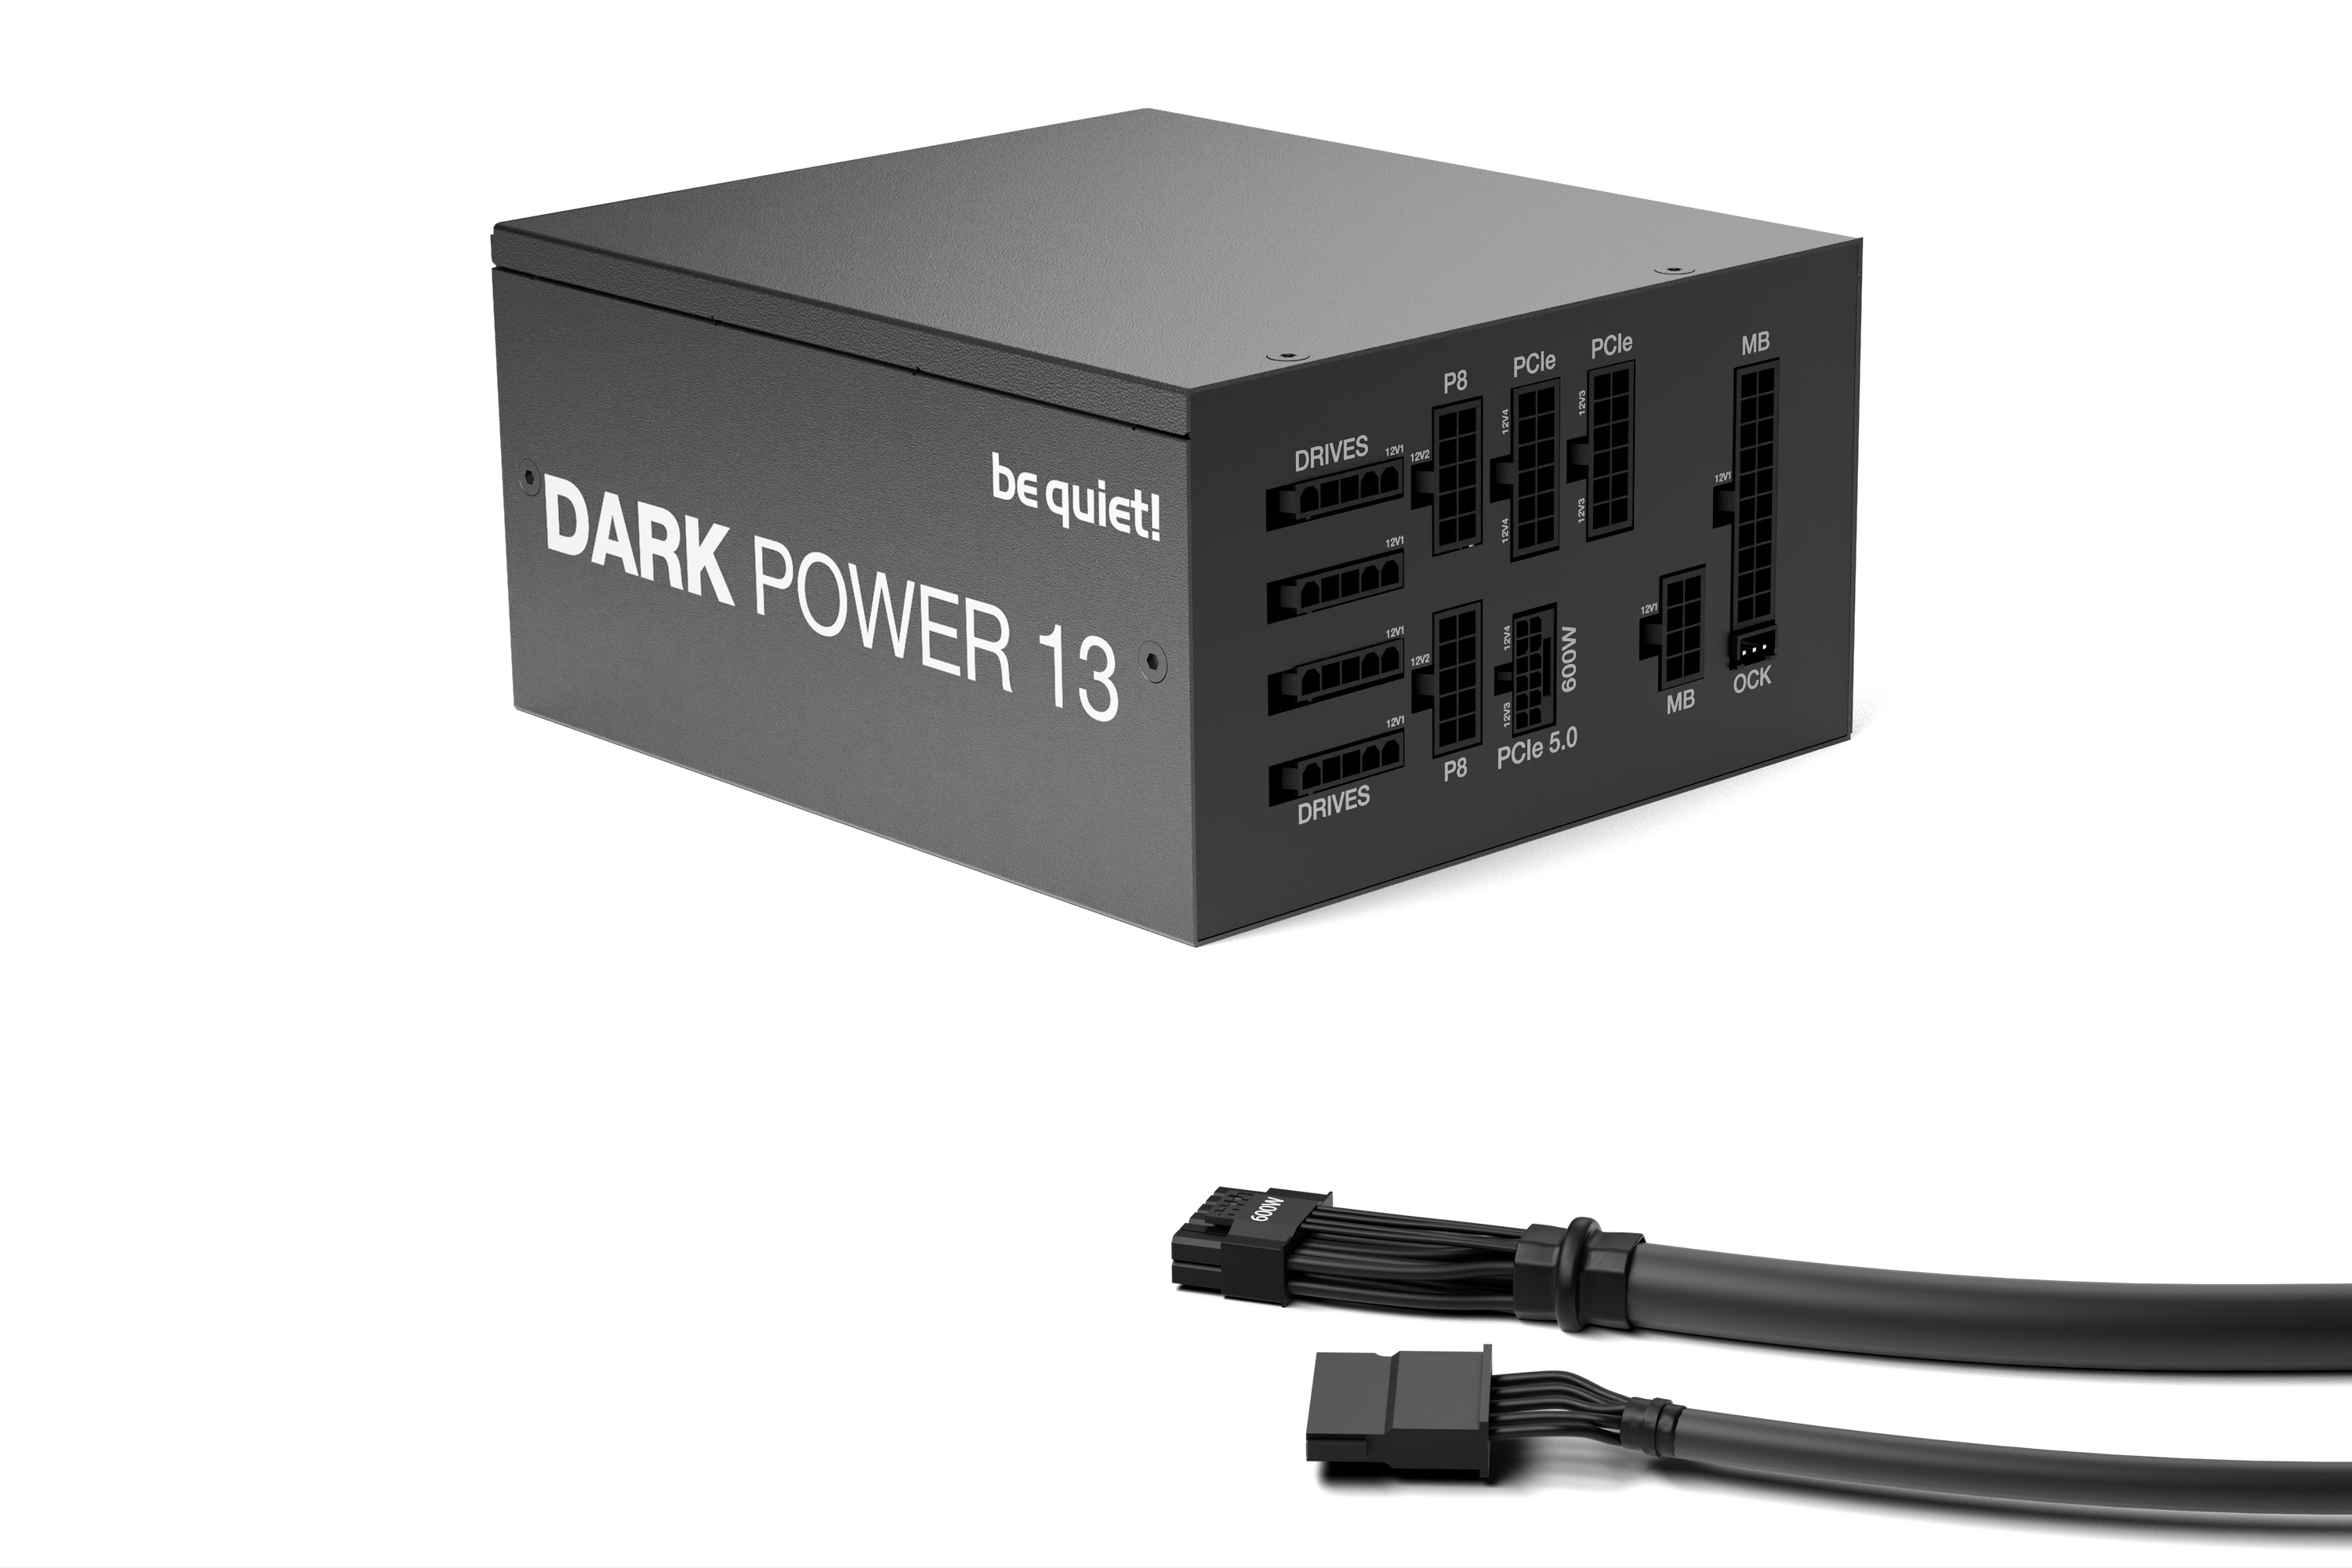   750W be quiet! Dark Power 13 (BN333)